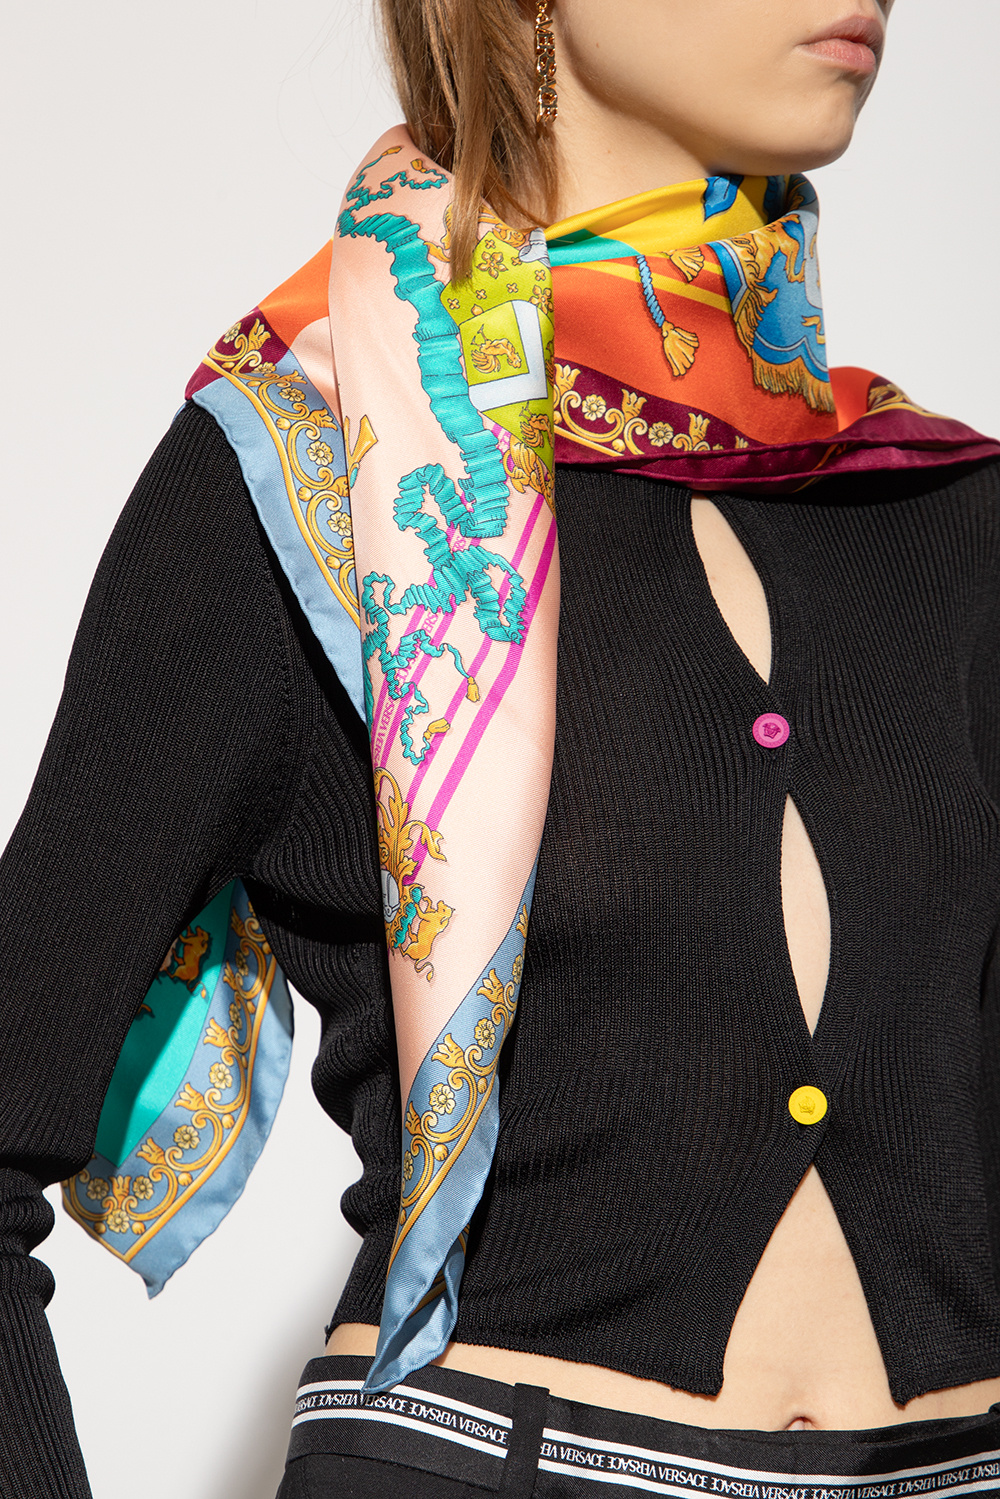 WOMEN FASHION Accessories Shawl Multicolored Size M Zara Multicolor silk touch blouse Multicolored M discount 58% 